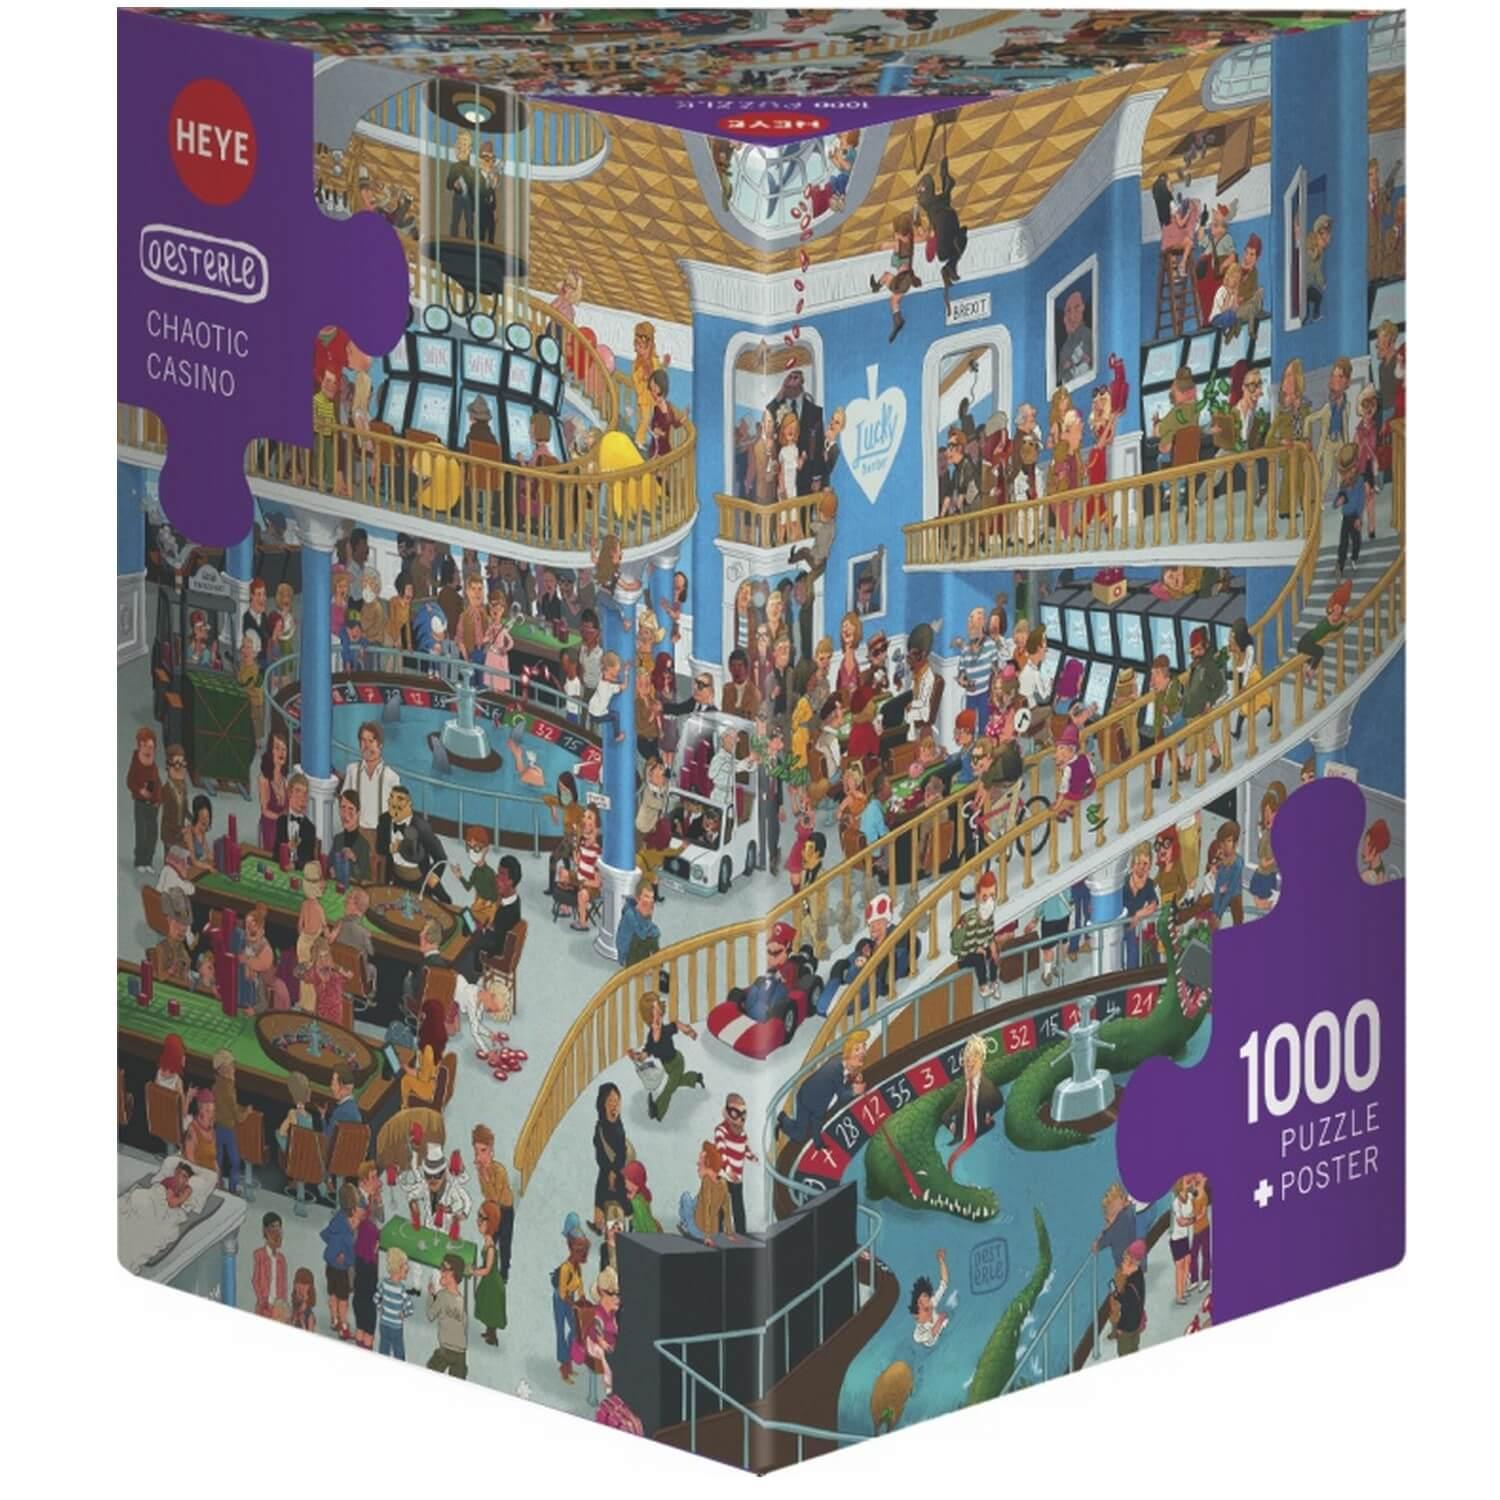 Puzzle 1000 pièces : Casino chaotique